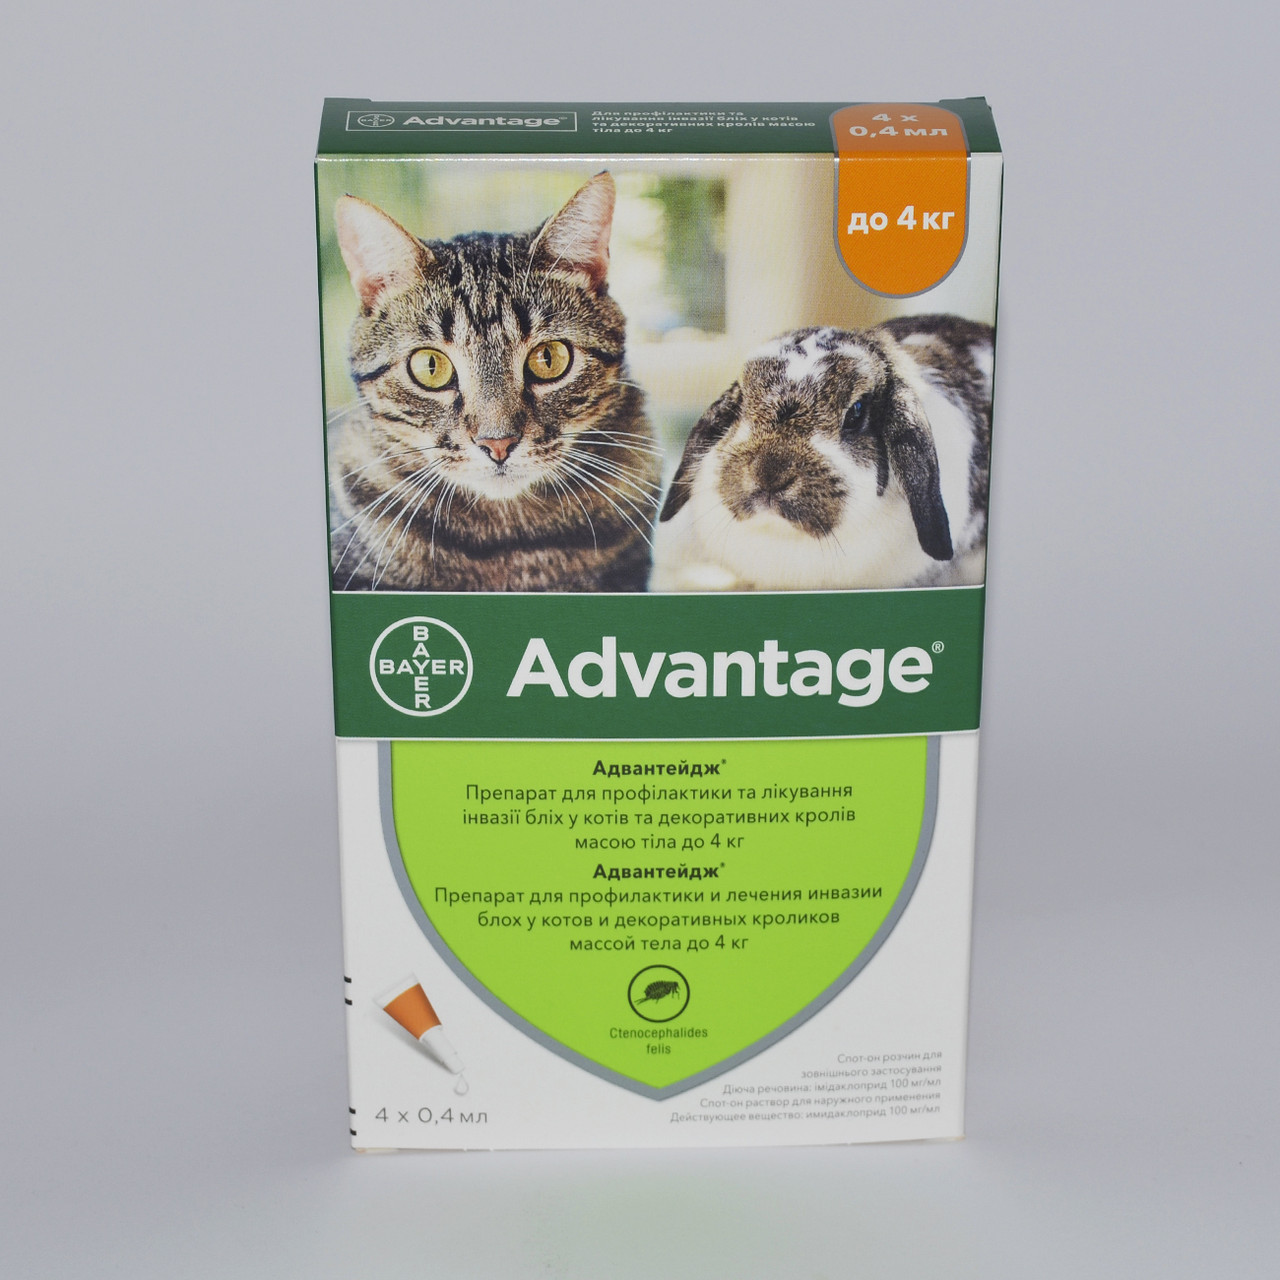 Адвантейдж 40 до 4 кг (Advantage 40) — 4піпетки (1 паковання) для котів і дрібних хатніх тварин